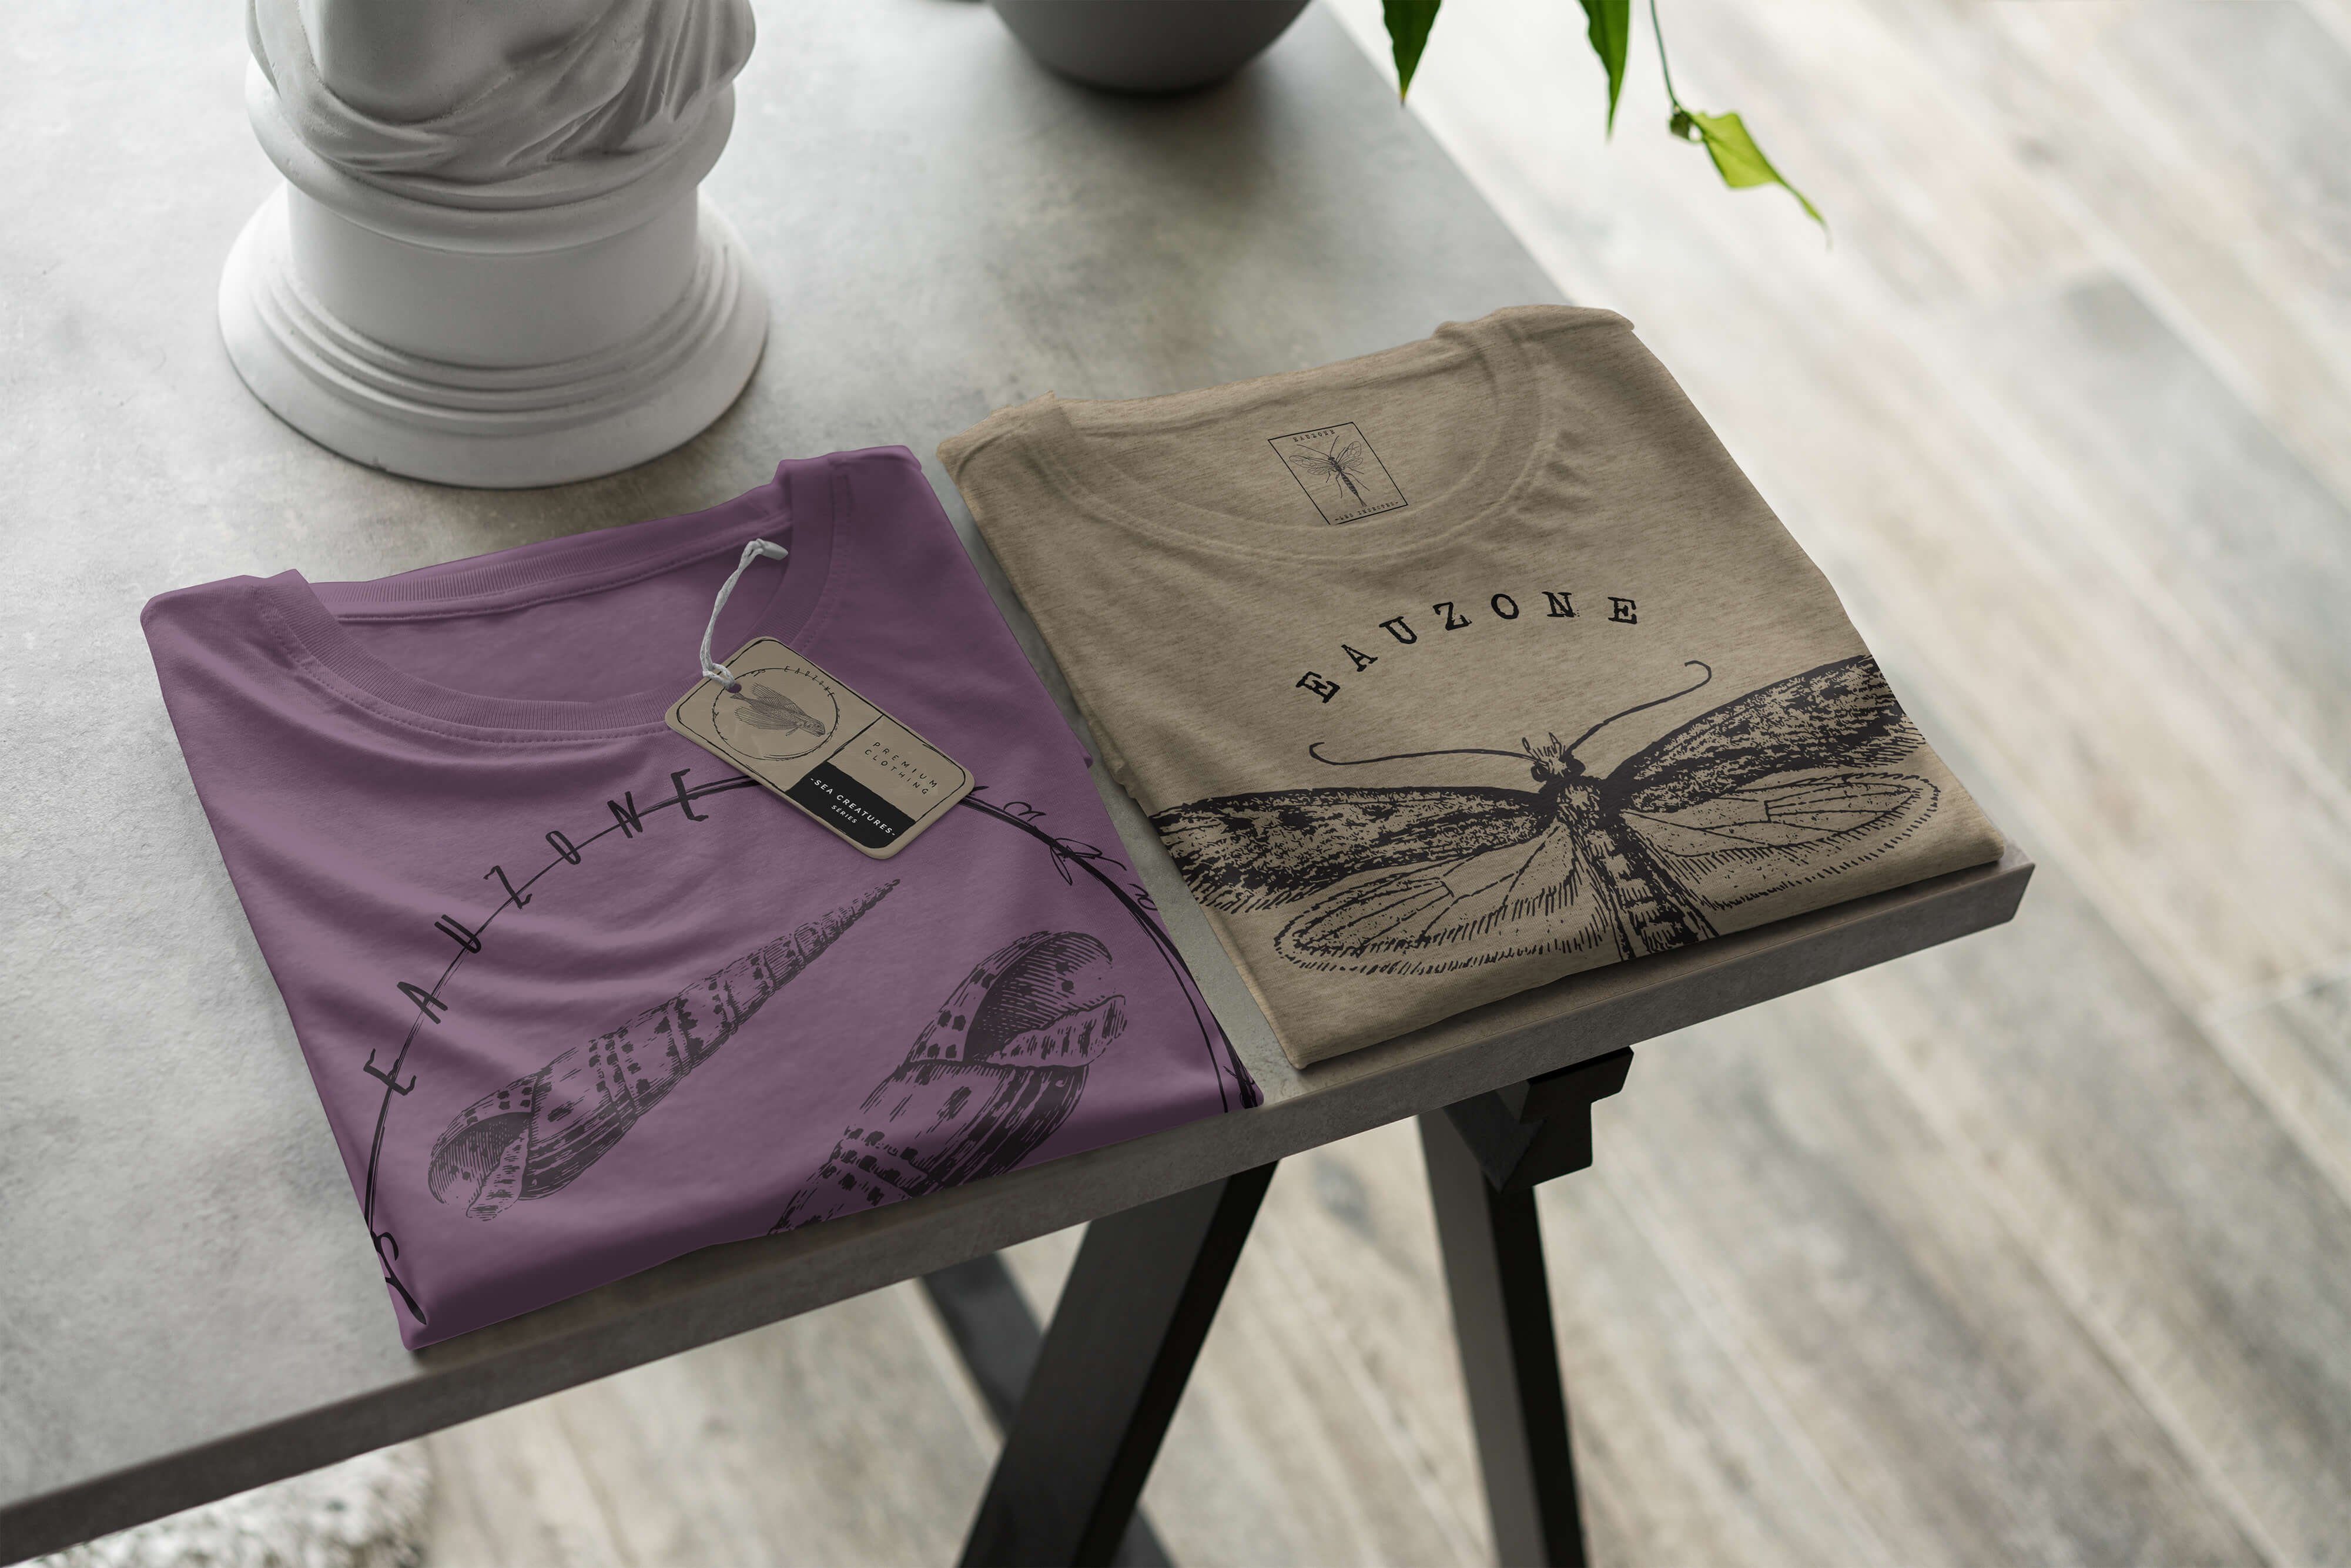 T-Shirt Sea Shiraz Sinus und Tiefsee Serie: / Creatures, Struktur Art Fische 075 Schnitt T-Shirt - sportlicher feine Sea